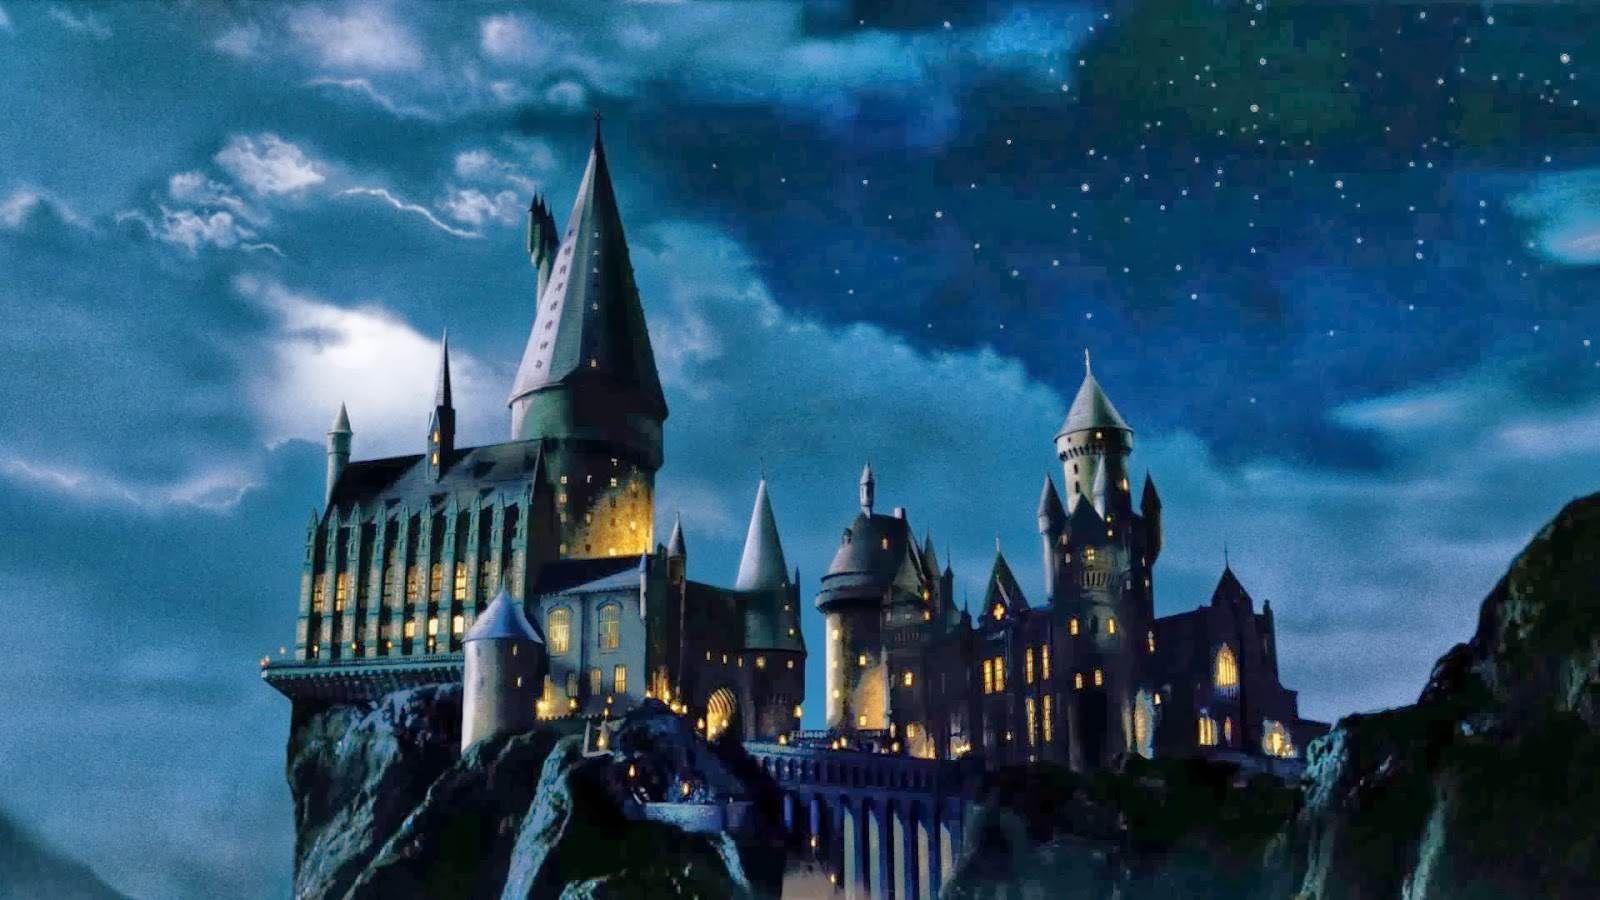 Là fan của Harry Potter, bạn không thể bỏ qua những bức hình nền tuyệt đẹp dành cho PC. Thỏa sức sáng tạo và thể hiện tình yêu dành cho series phim nổi tiếng này!